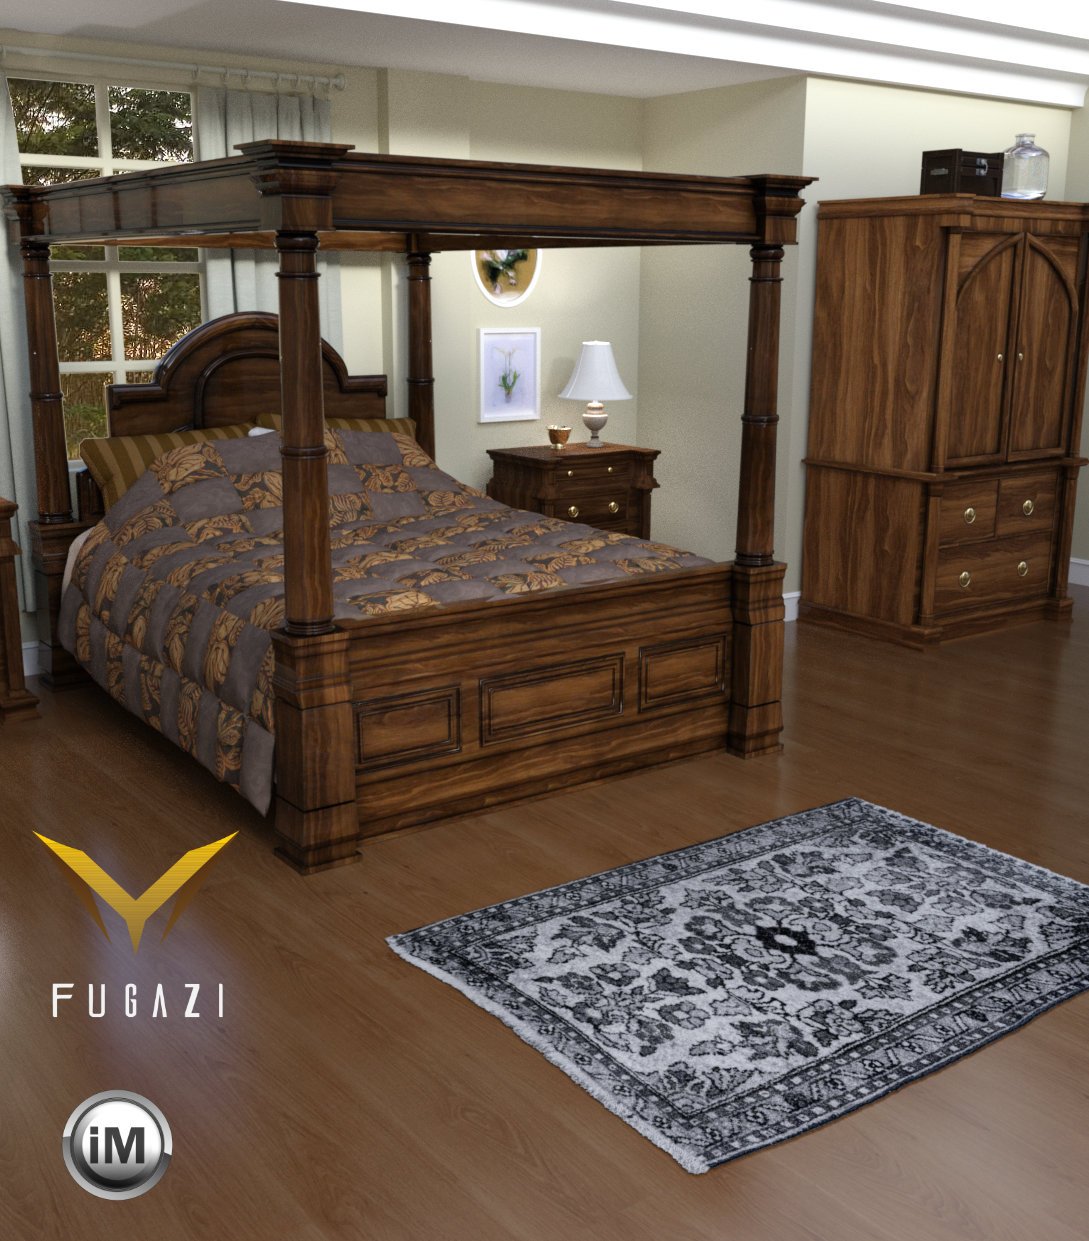 FG Romantic Bedroom by: Fugazi1968Ironman, 3D Models by Daz 3D